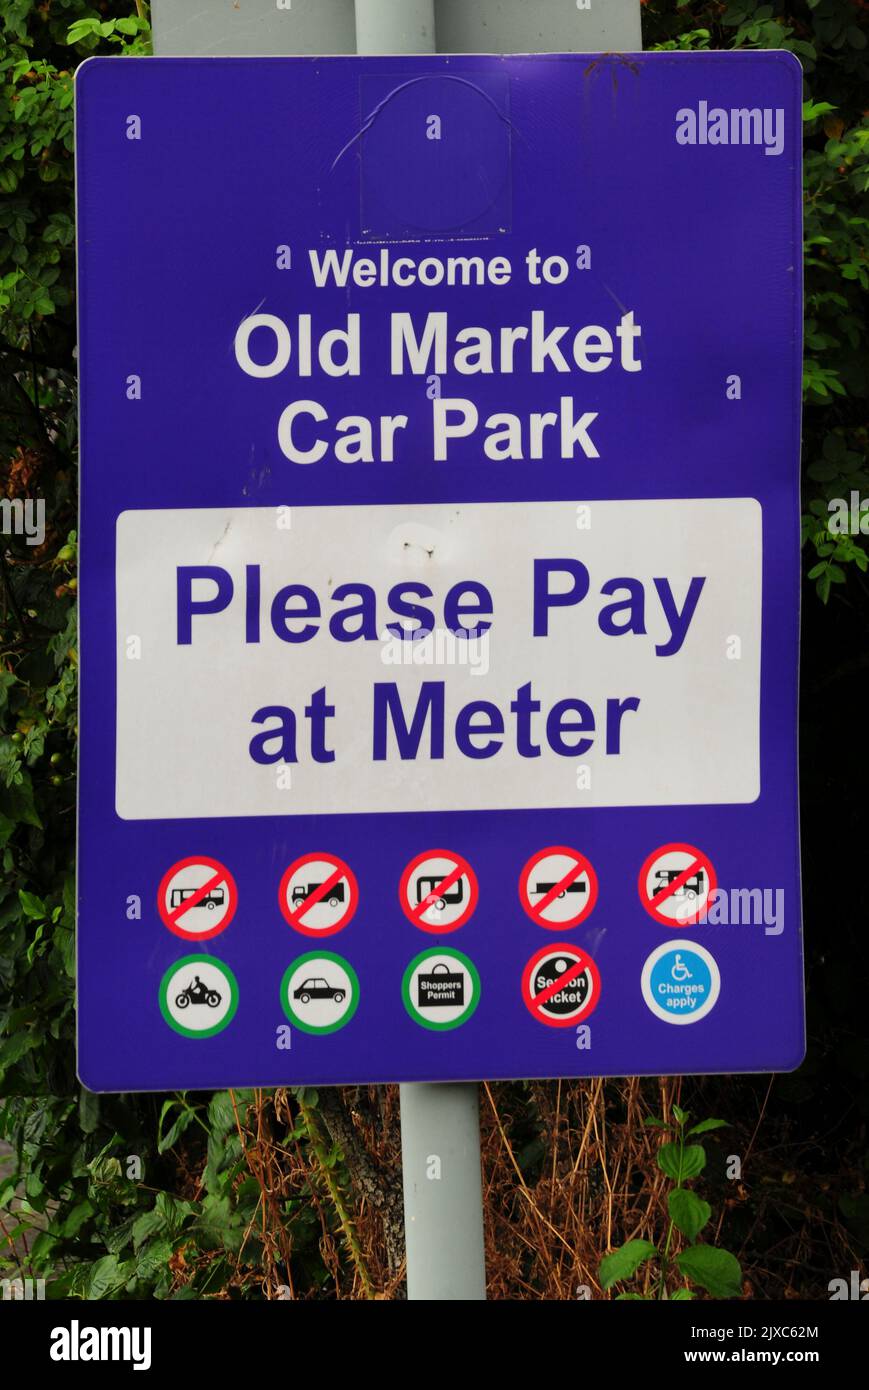 Car park sign in Old Market Car Park, Dorchester, Dorset, UK Stock Photo